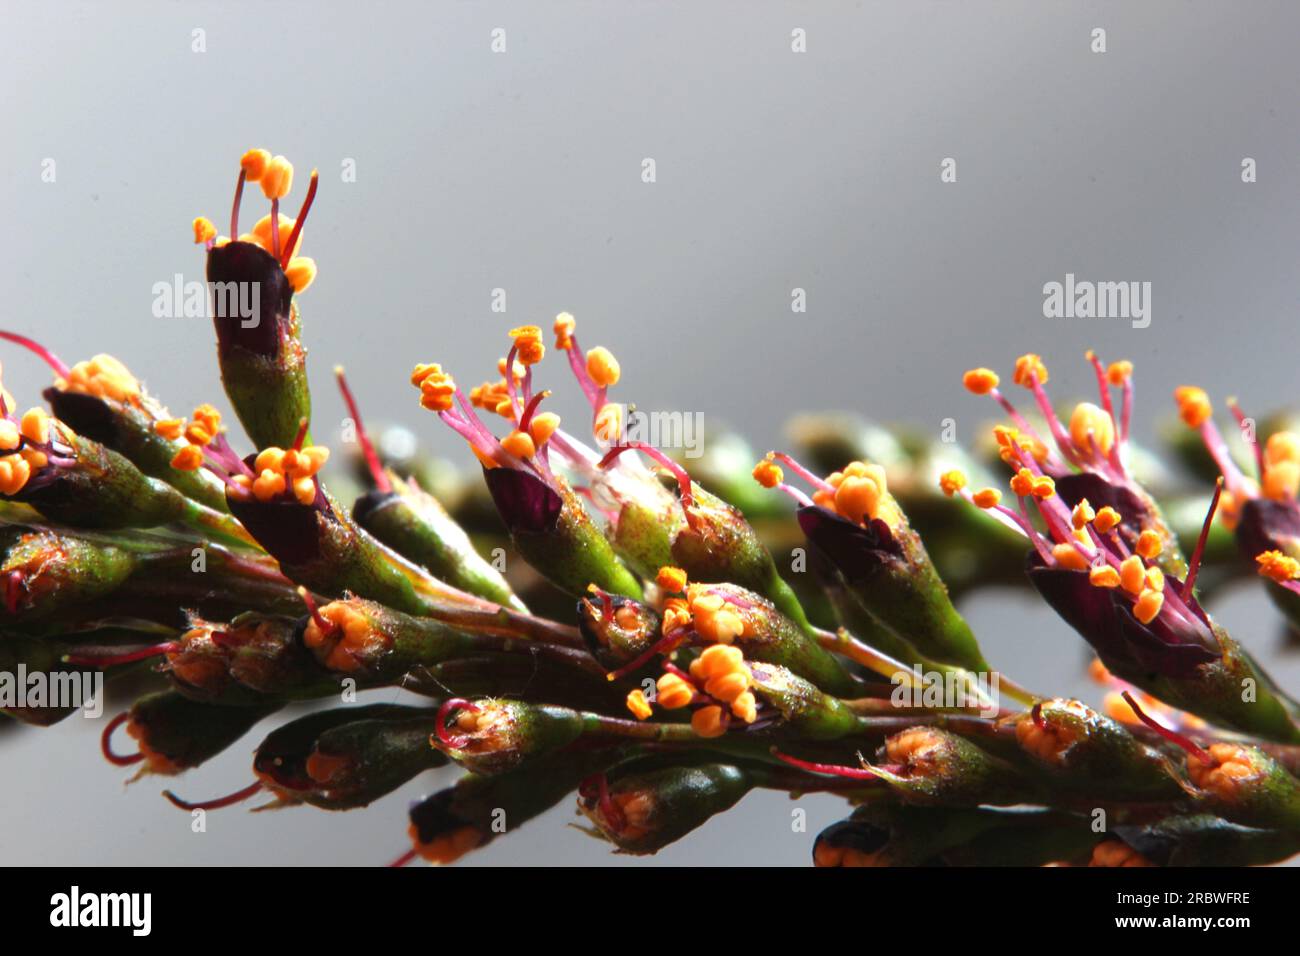 Super close-up of desert false indigo (Amorpha fruticosa) blossoms. Stock Photo